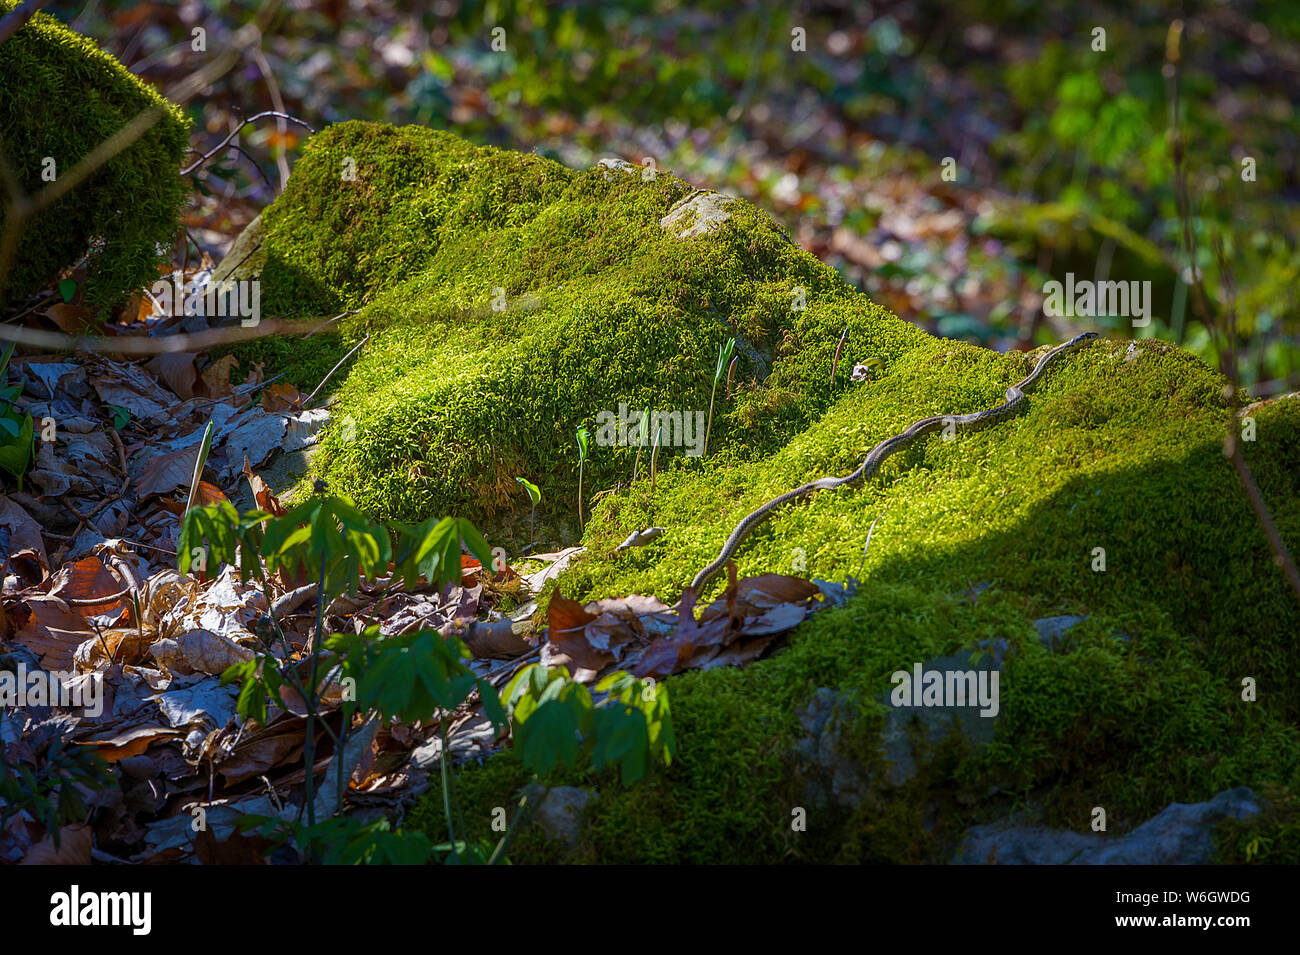 La lumière du soleil expose une couleuvre rayée glisser sur un rocher couvert de mousse. Banque D'Images